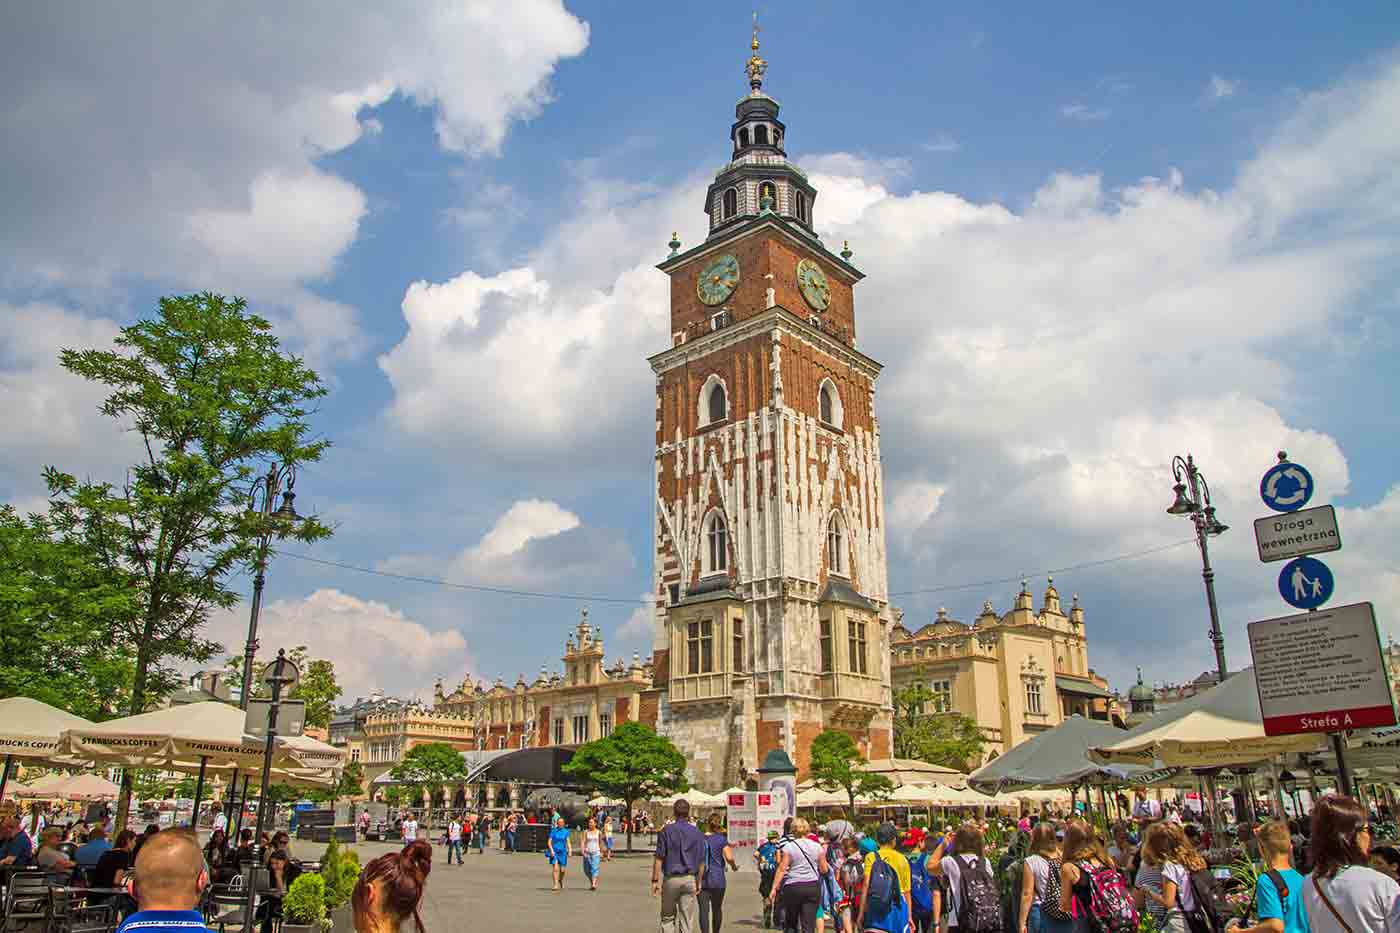 tourist attractions near krakow